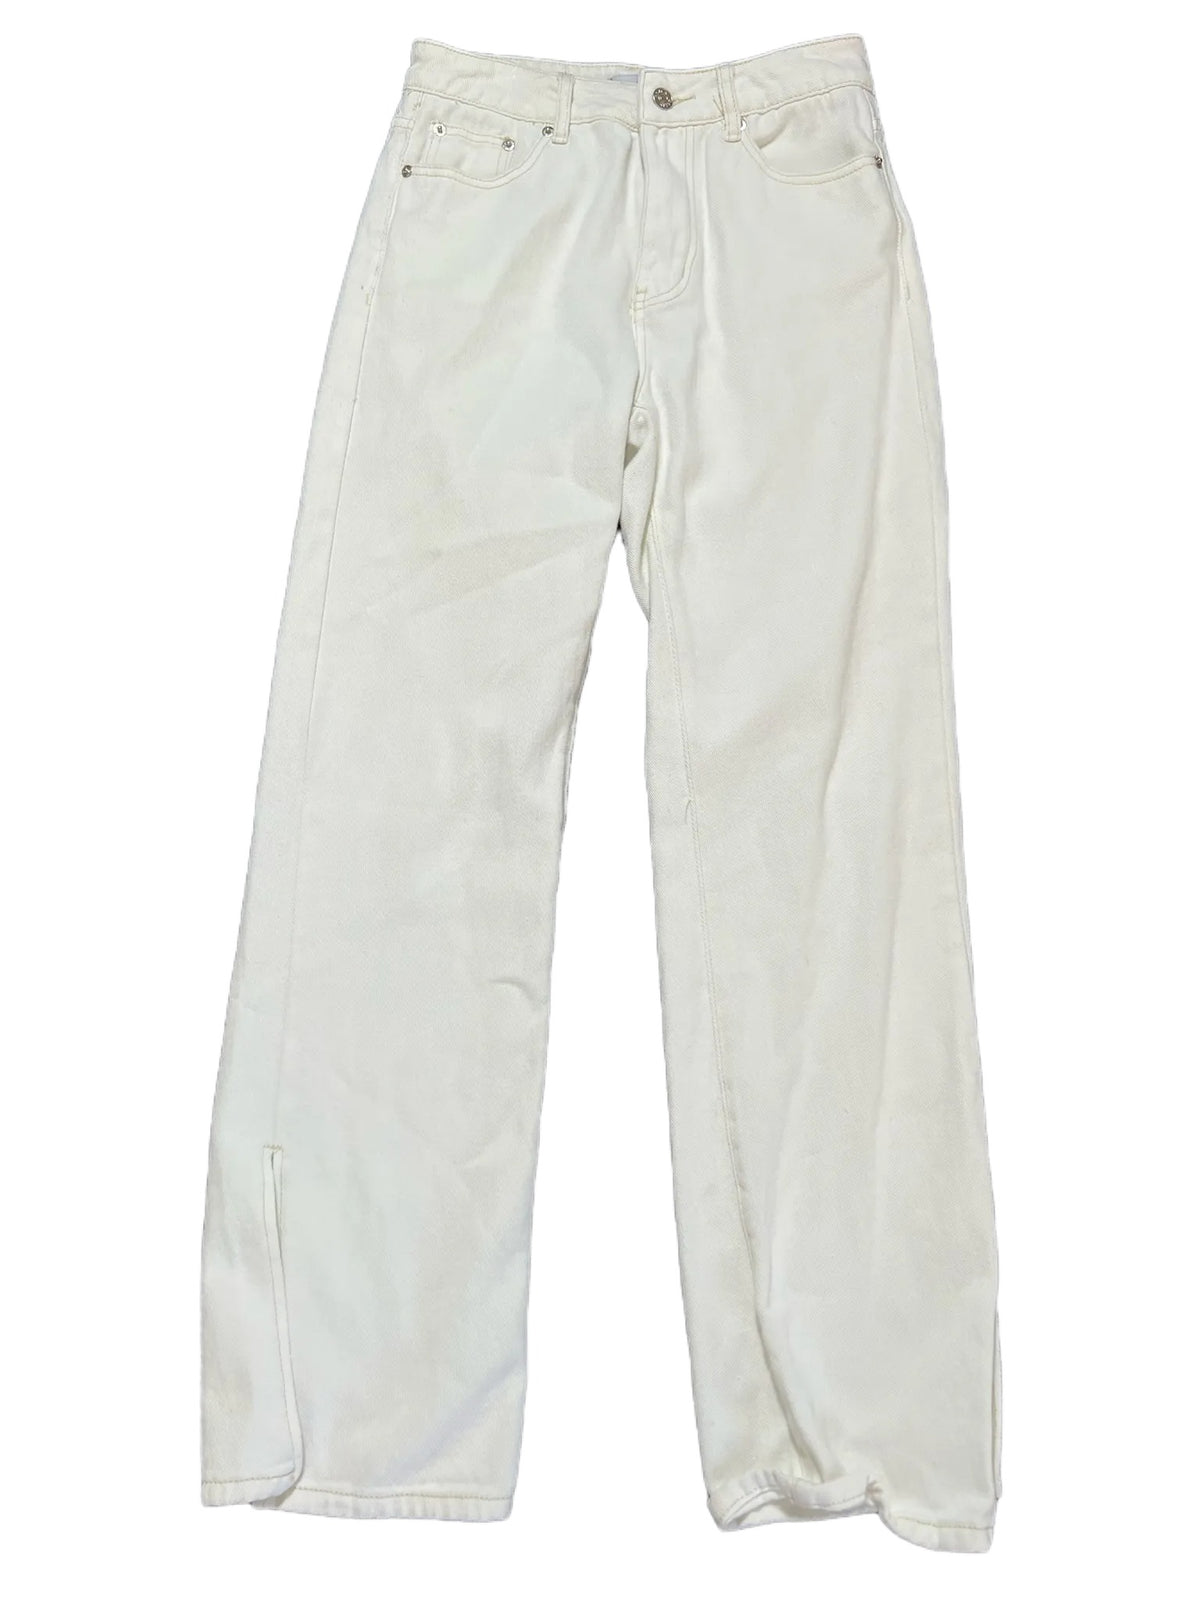 Adika- White Jeans